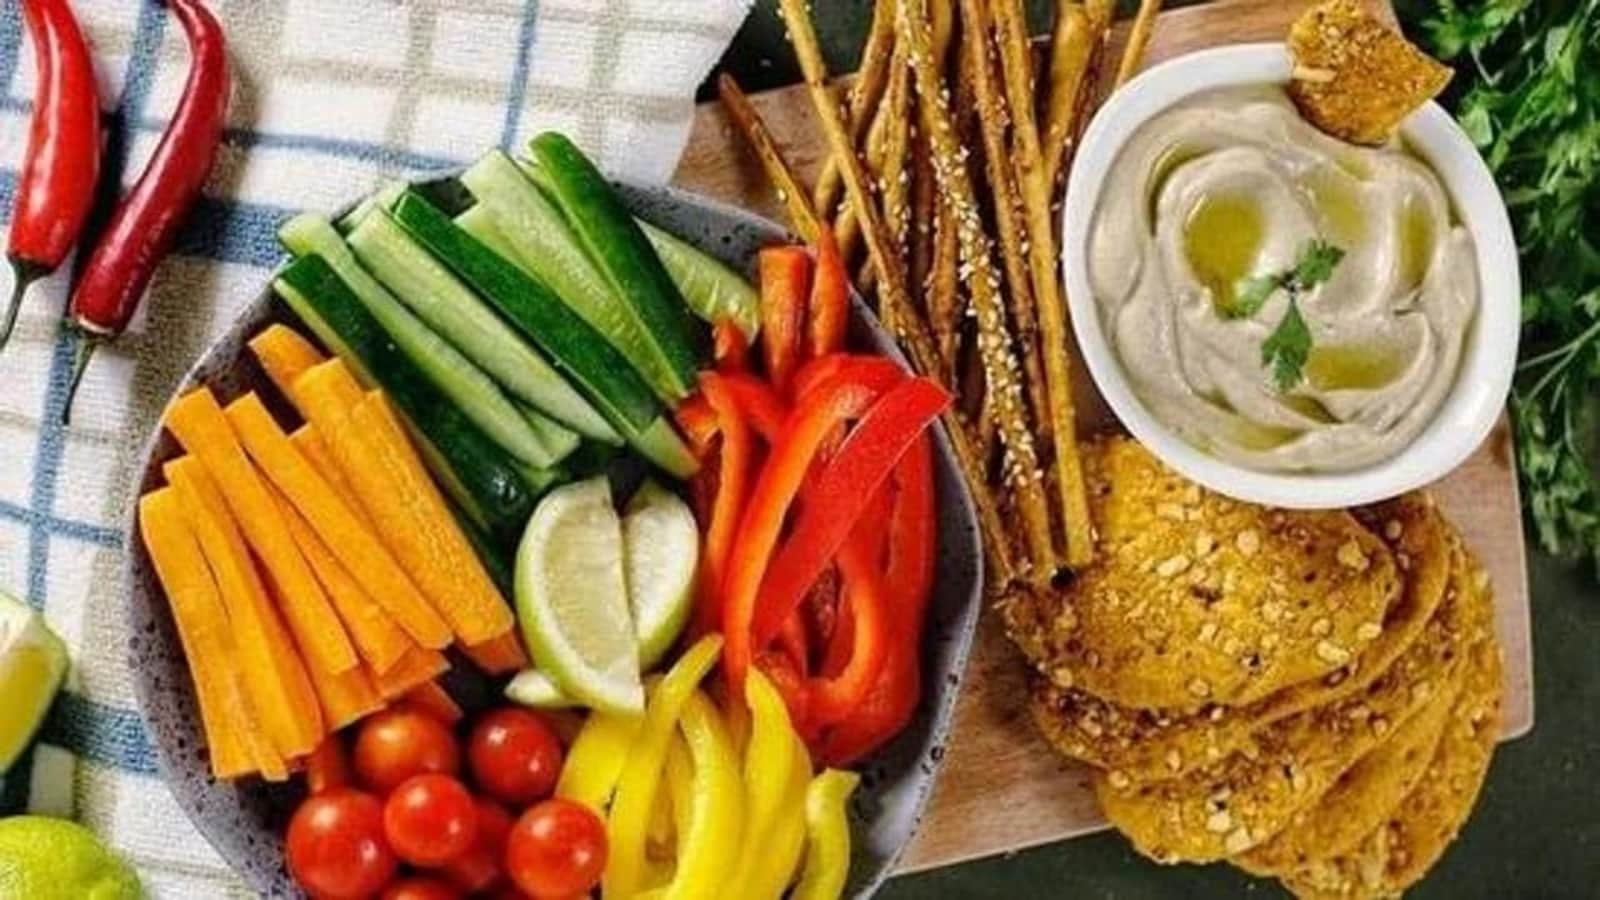 Rozmowa o zdrowiu |  Zalecenia żywieniowe Narodowego Instytutu Żywienia są receptą na zdrowy tryb życia